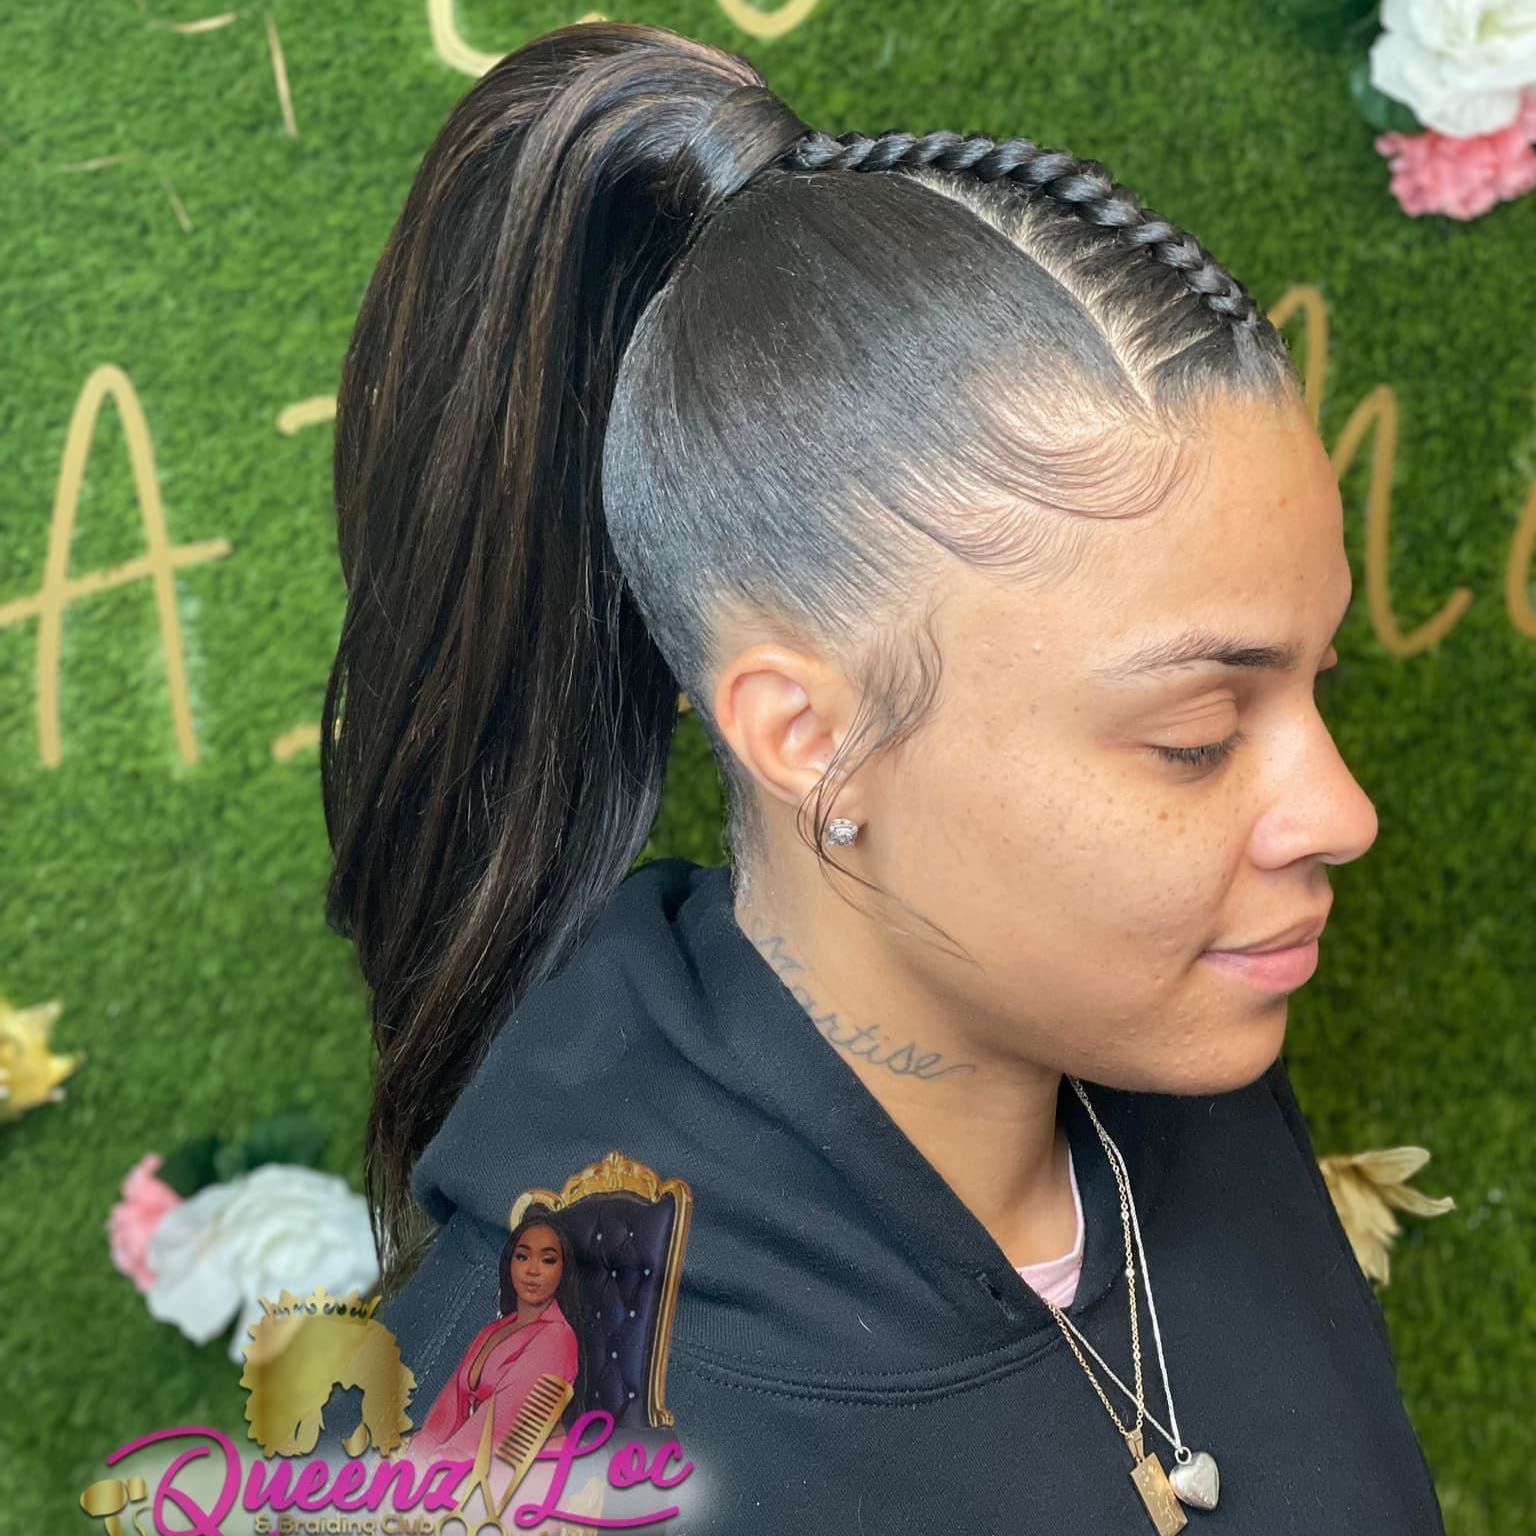 Sleek high ponytail w/ Braid(Hair provided) 👑 portfolio